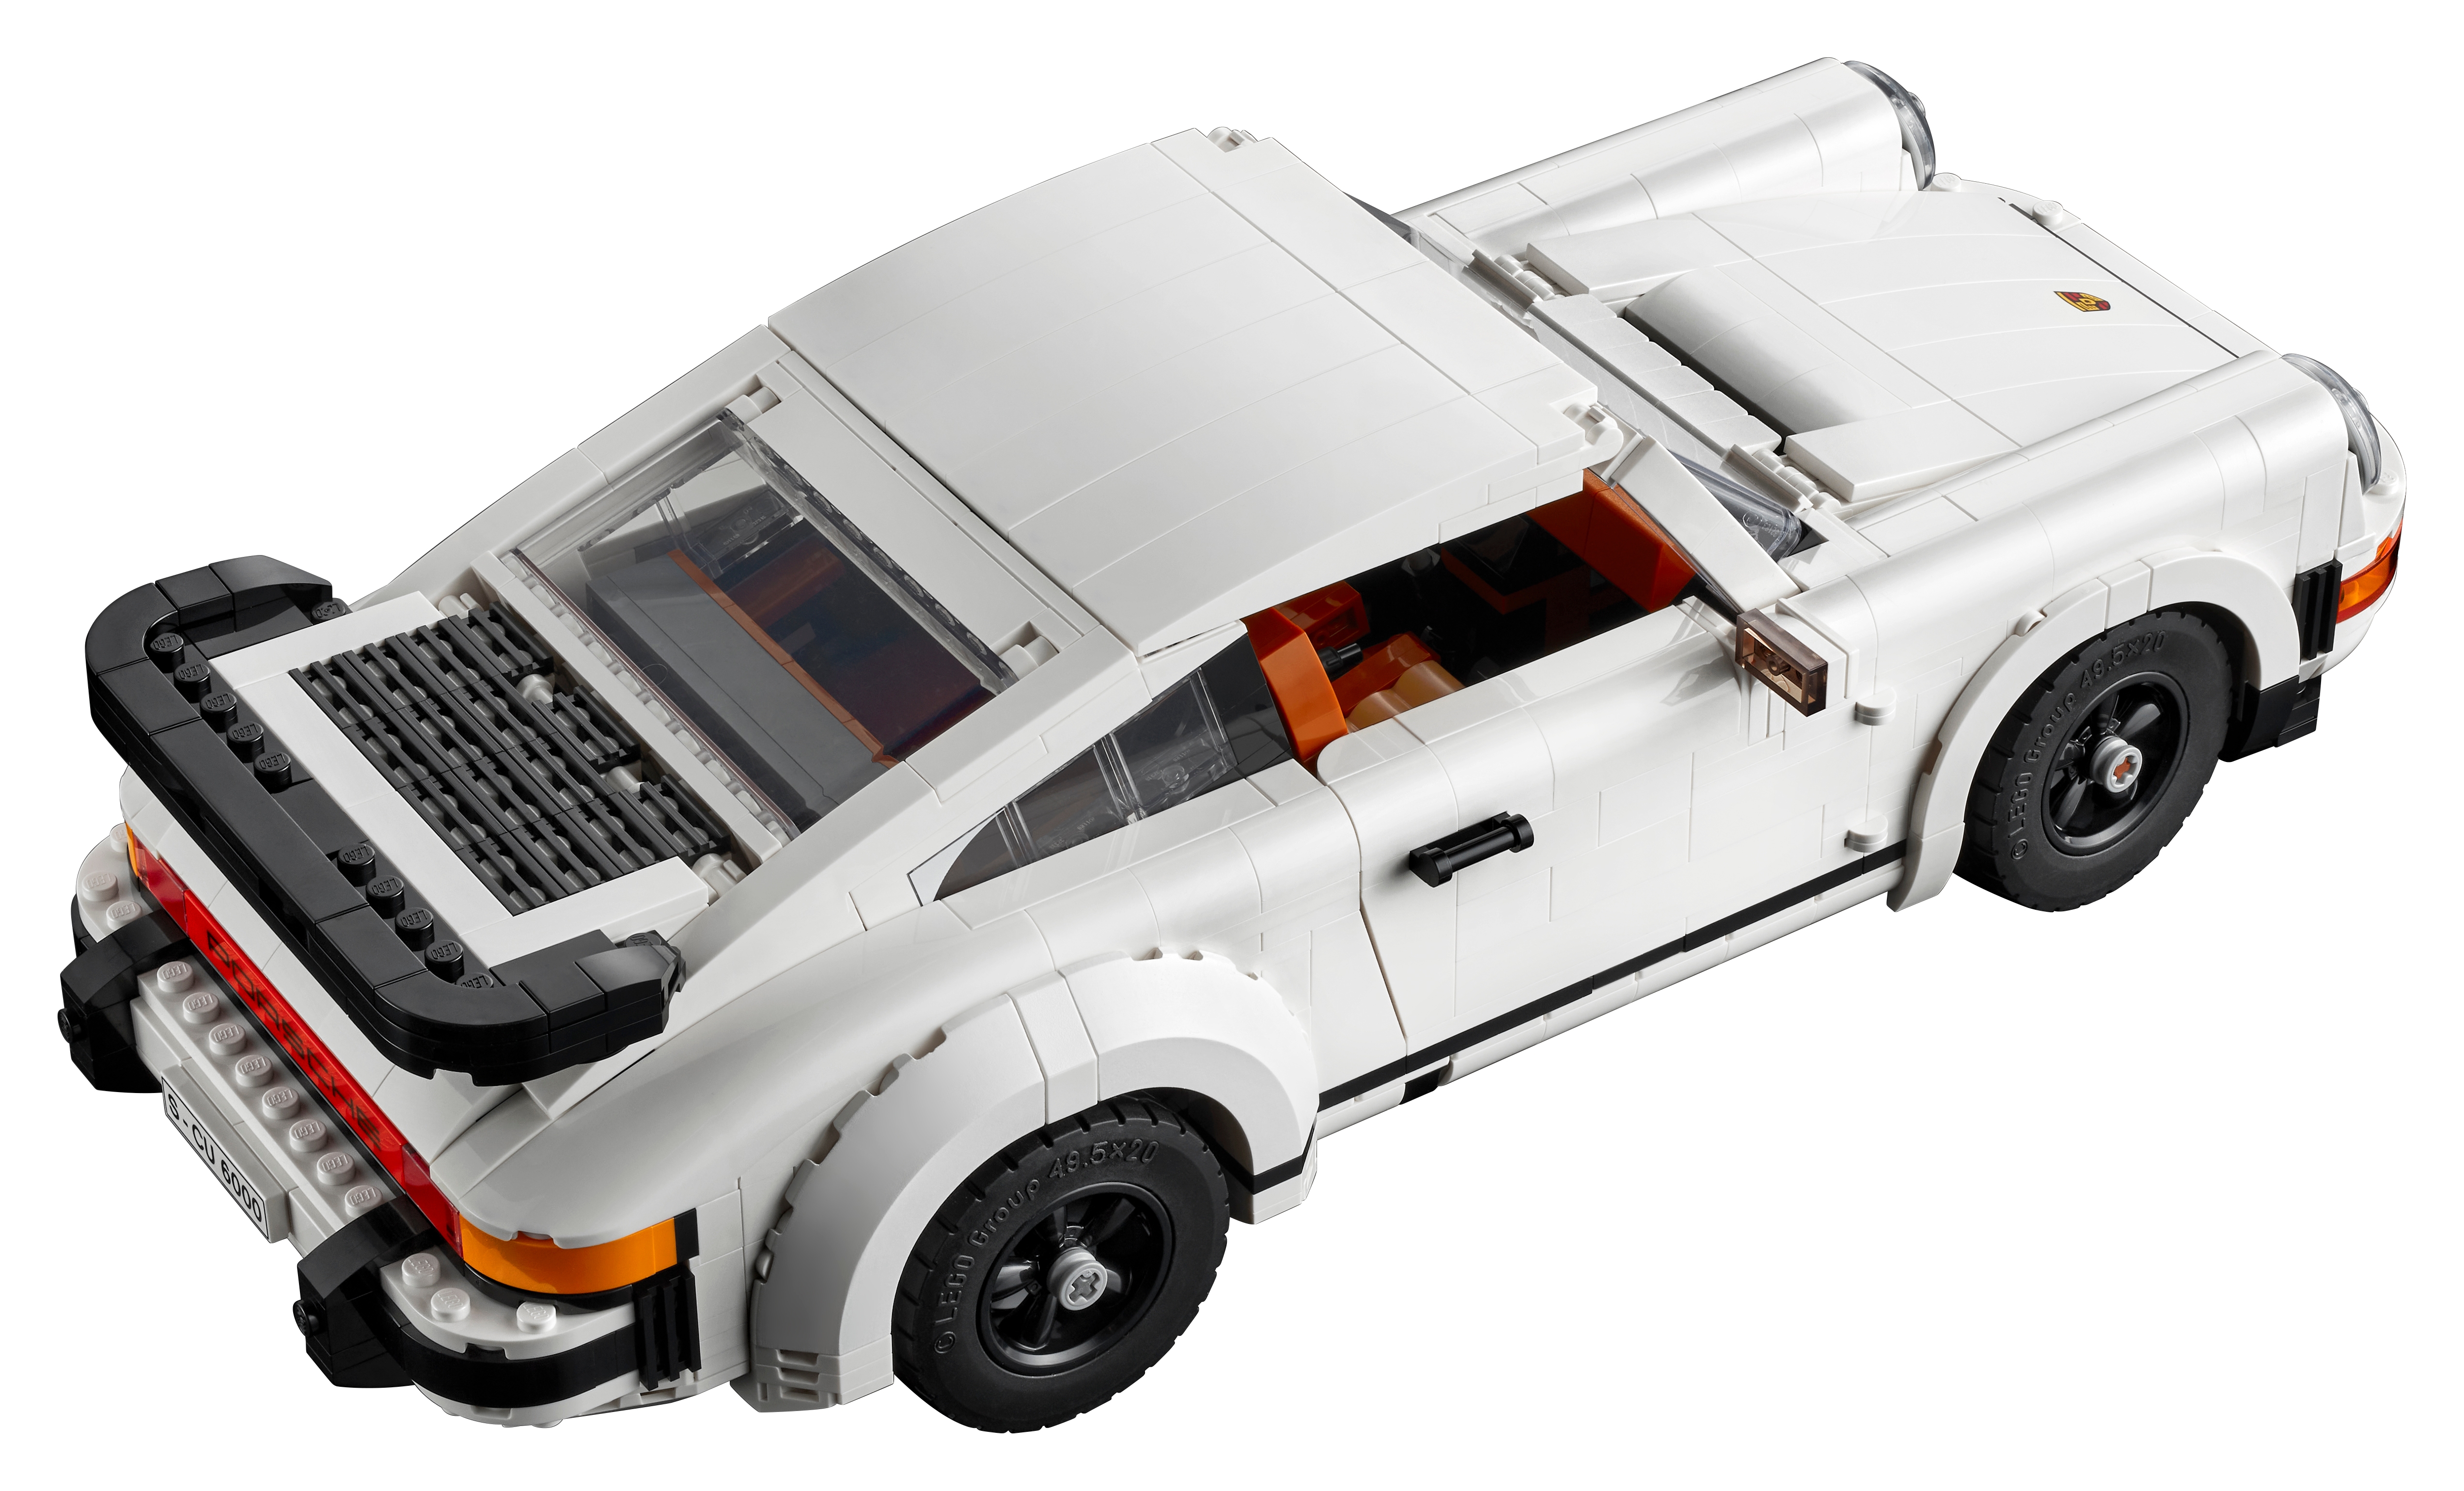 Soldes LEGO : Porsche, Lamborghini… 3 voitures de collection à prix écrasés